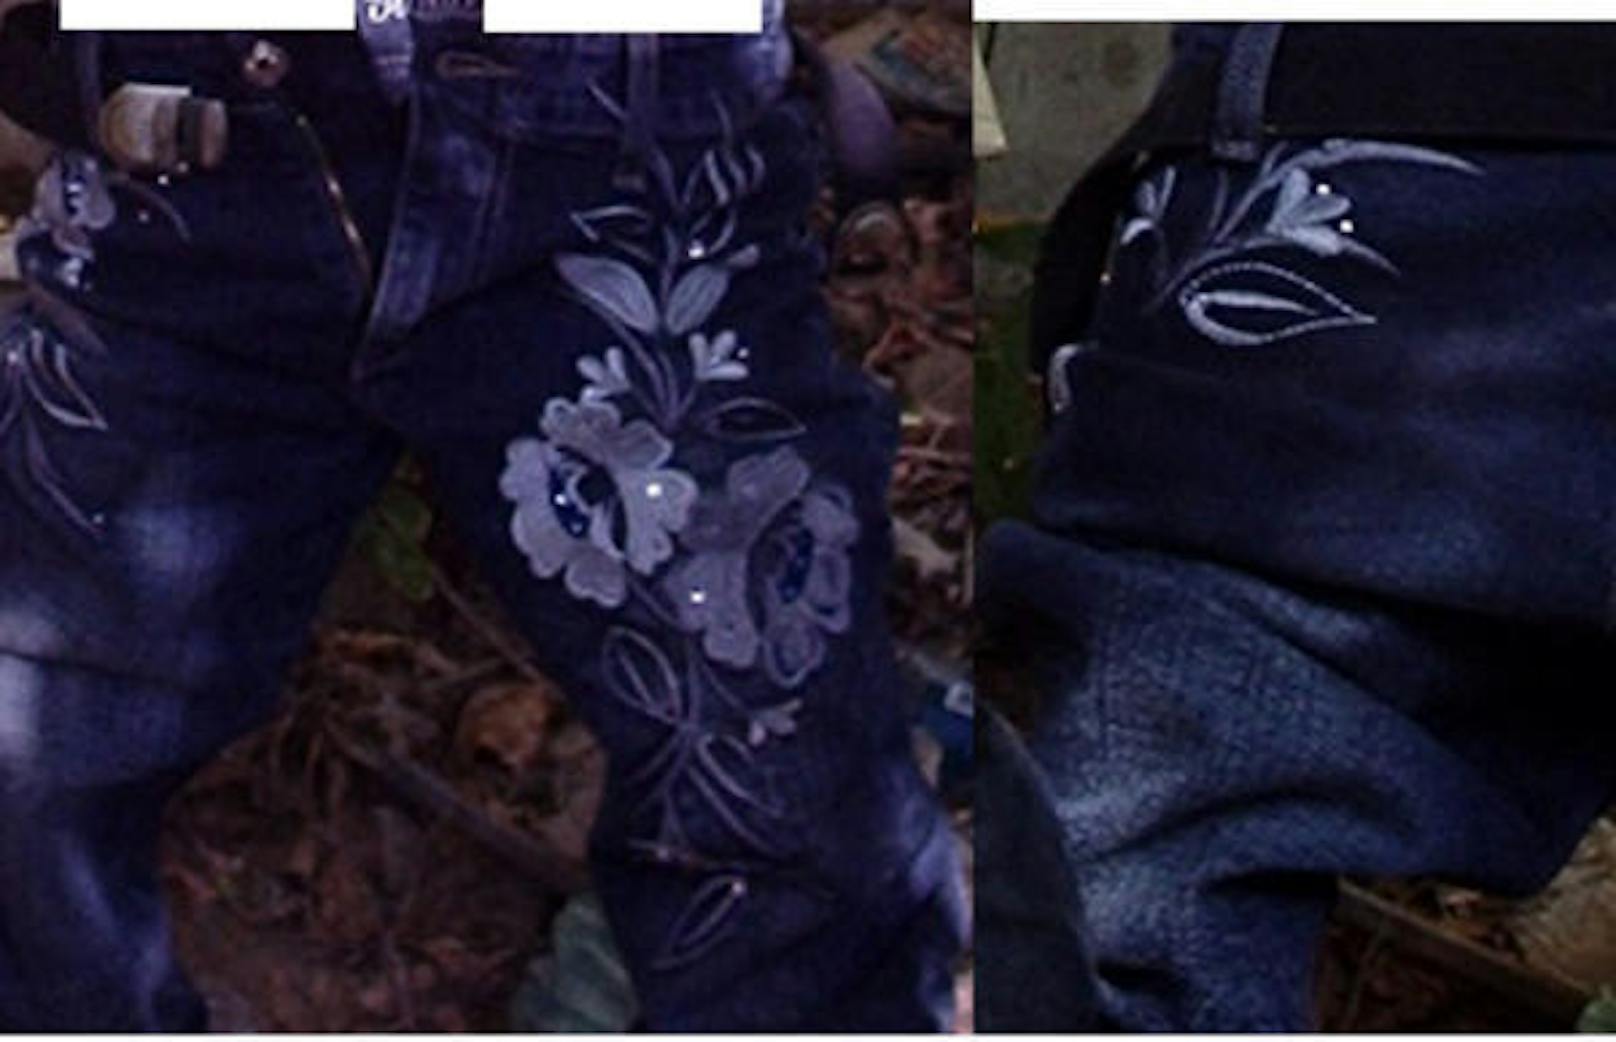 Ein Paar ausgezogene Jeans mit Blumen drauf. Europol möchte wissen: "Erkennen Sie die Marke dieser Hose und wissen Sie, wo man diese kaufen kann?"